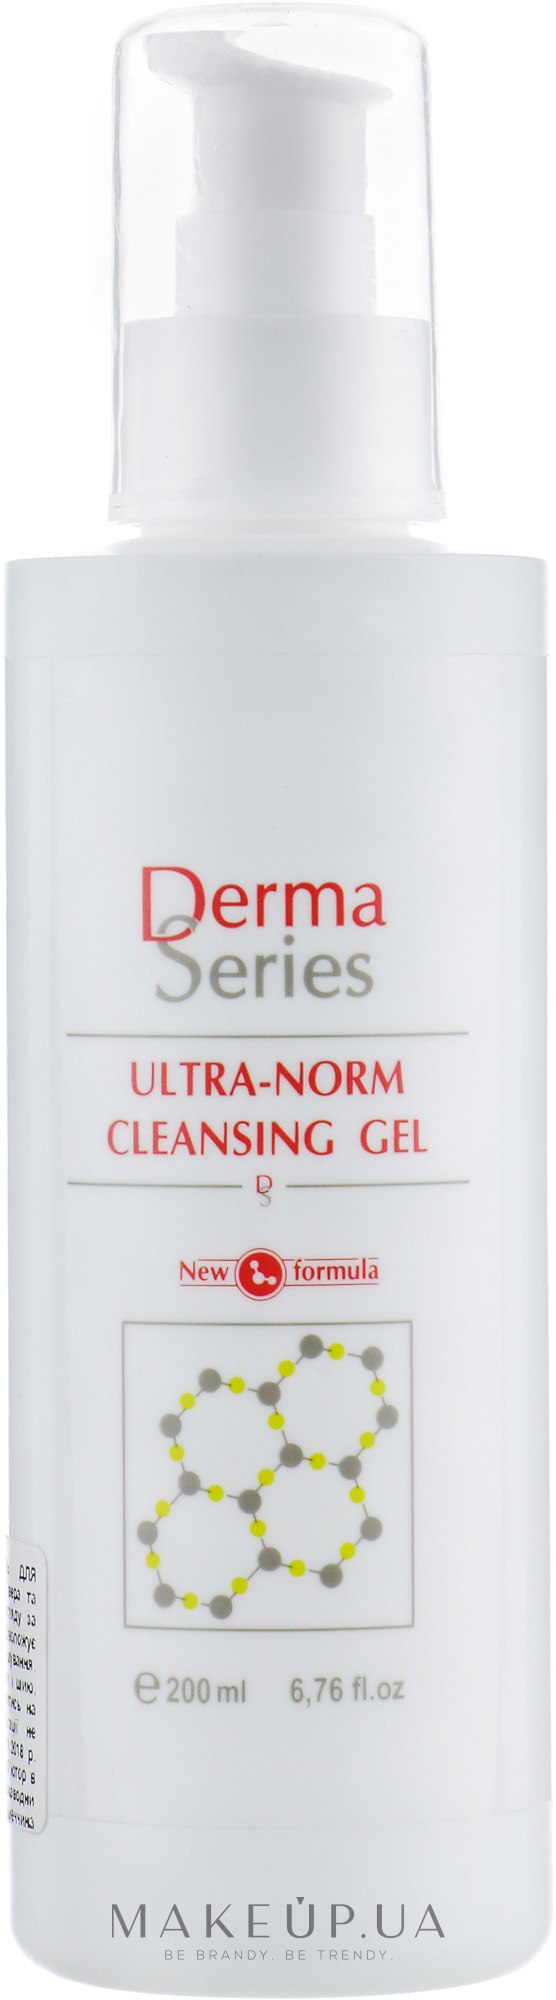 Нормалізувальний очищувальний гель  - Derma Series Ultra-Norm Cleansing Gel — фото 200ml